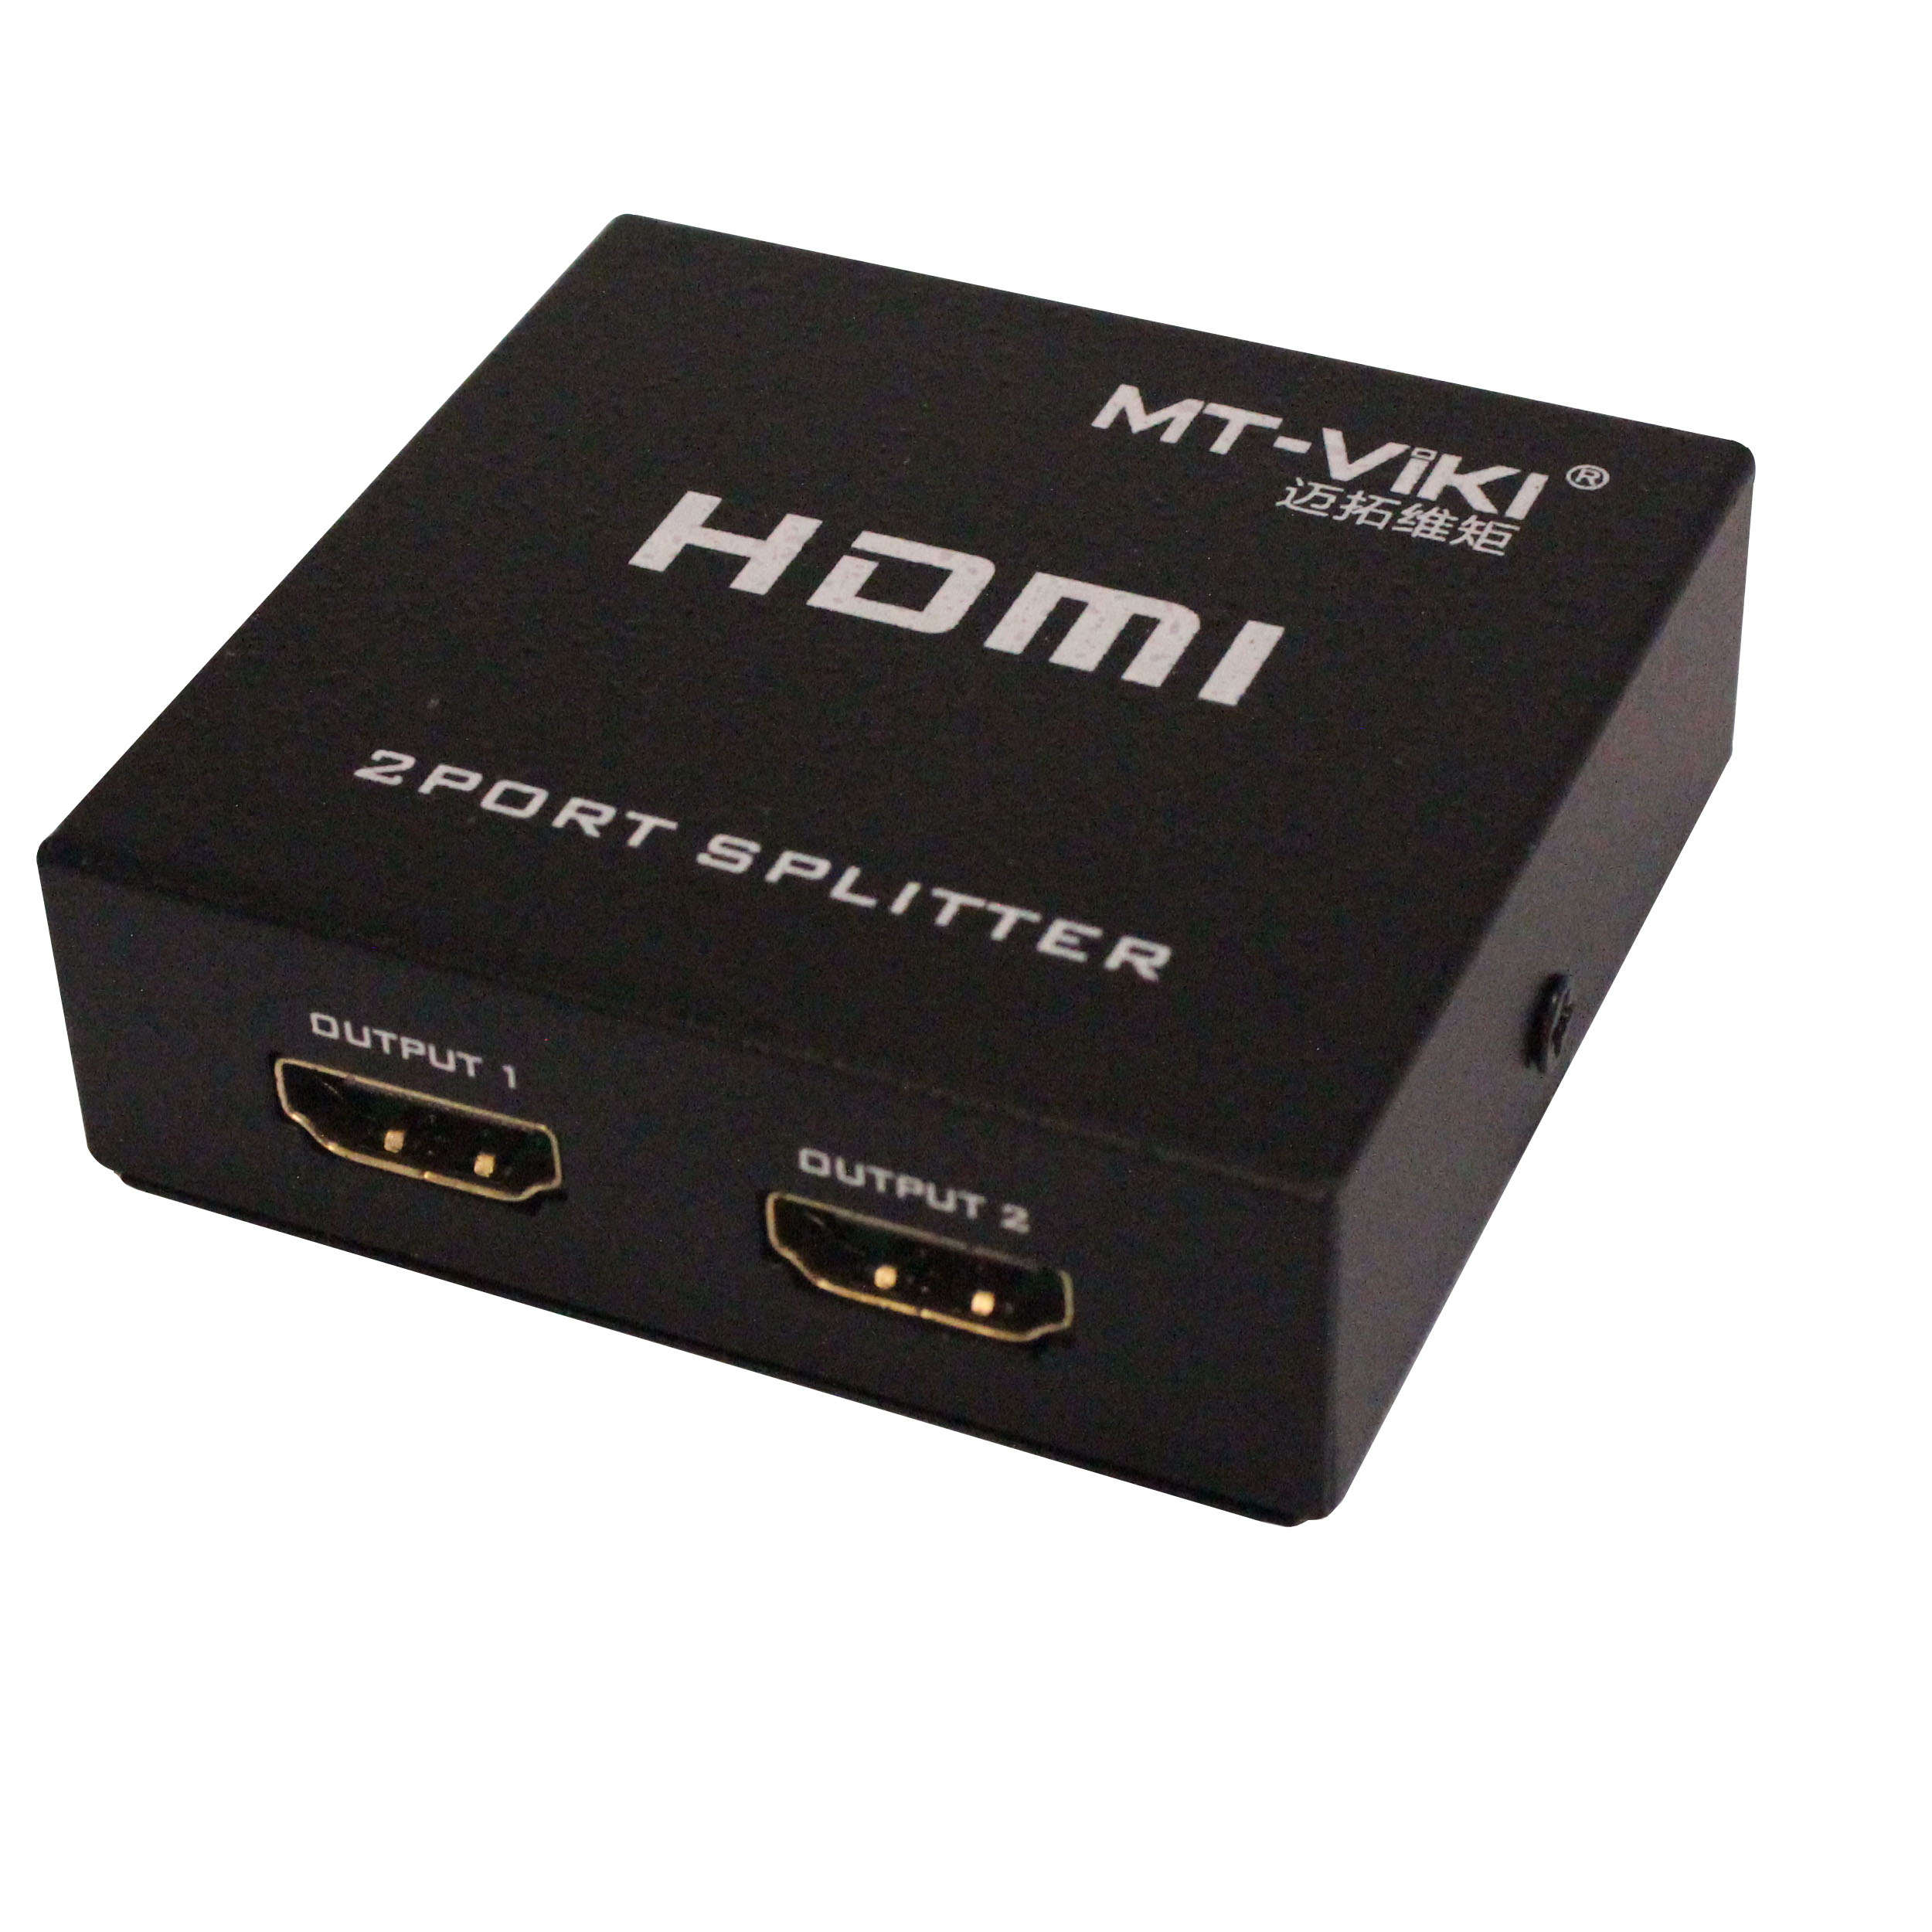 اسپلیتر 1 به 2 HDMI ام تی -وی کی مدل SP12